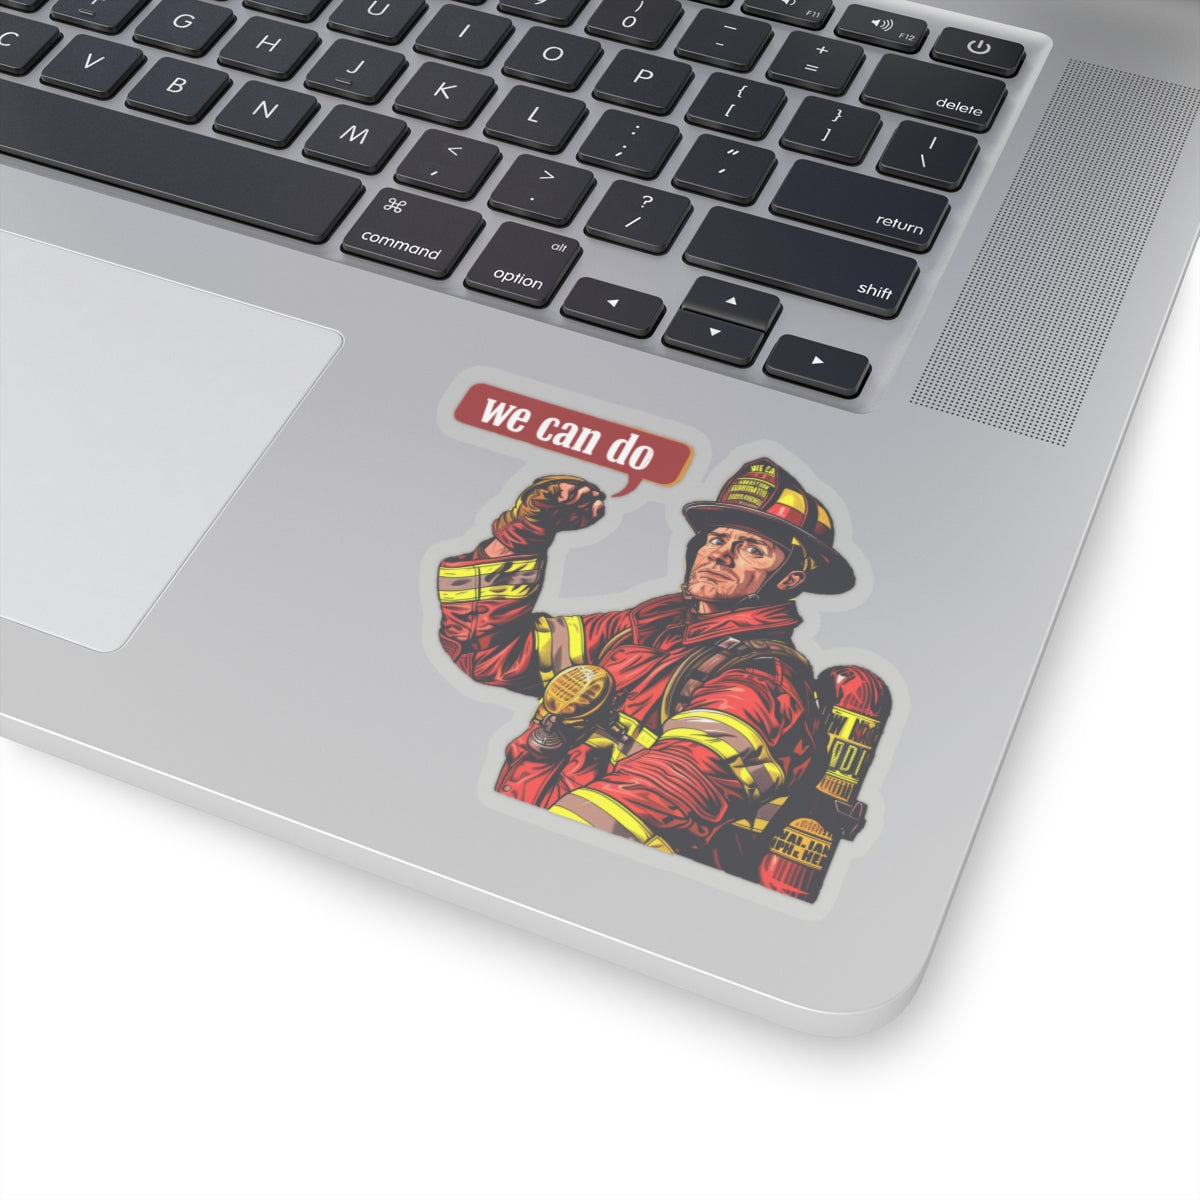 Fire fighter we can do Kiss-Cut Sticker